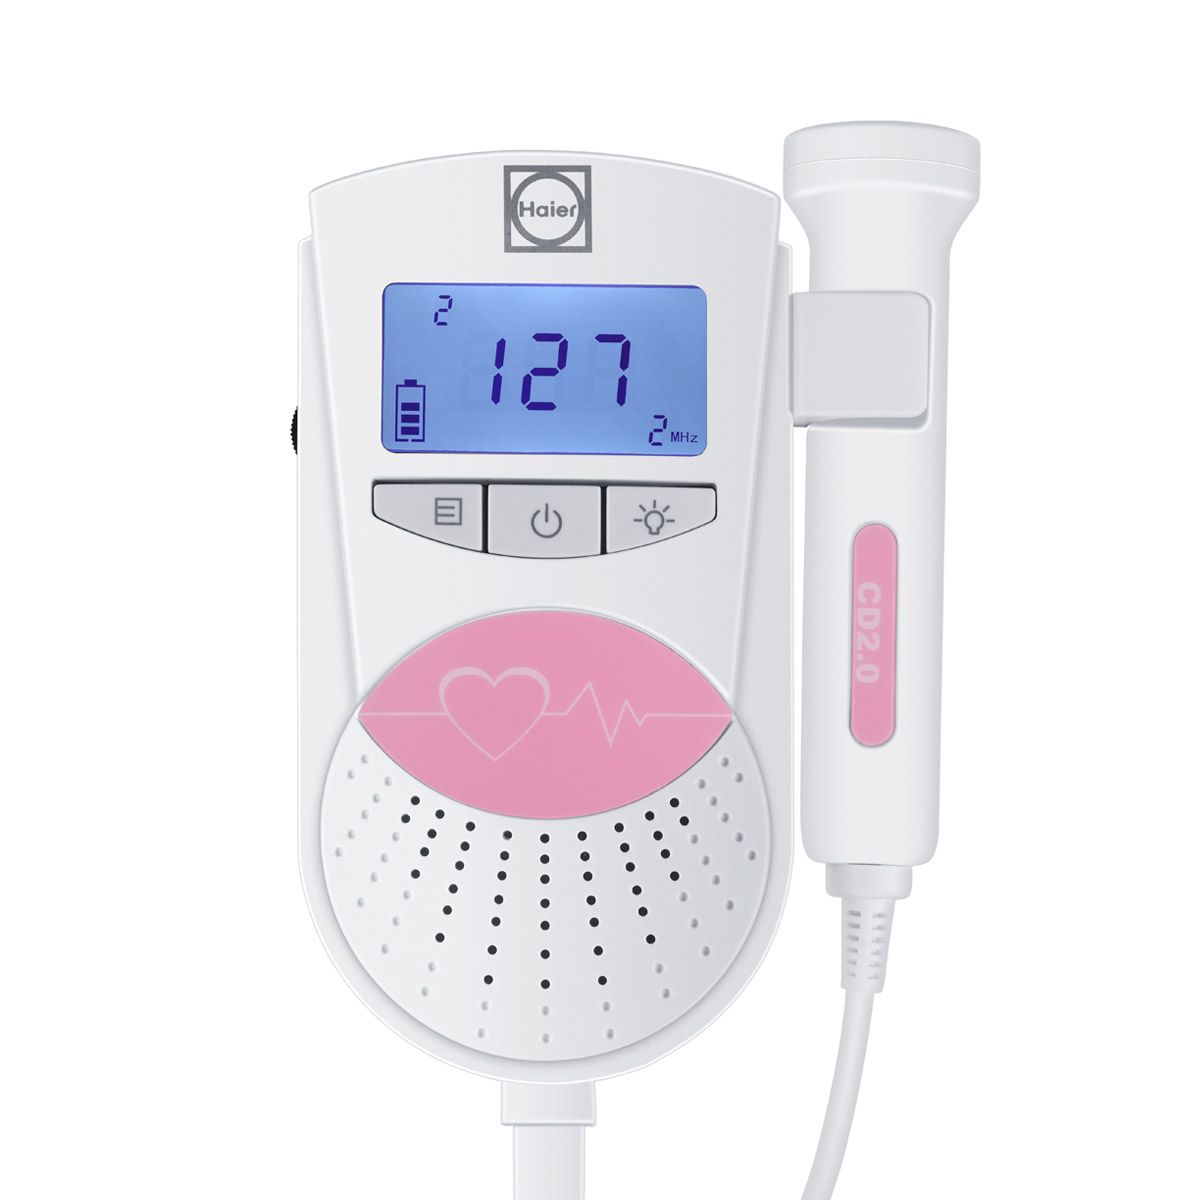 胎心監護儀設計適用于人們的日常監護使用